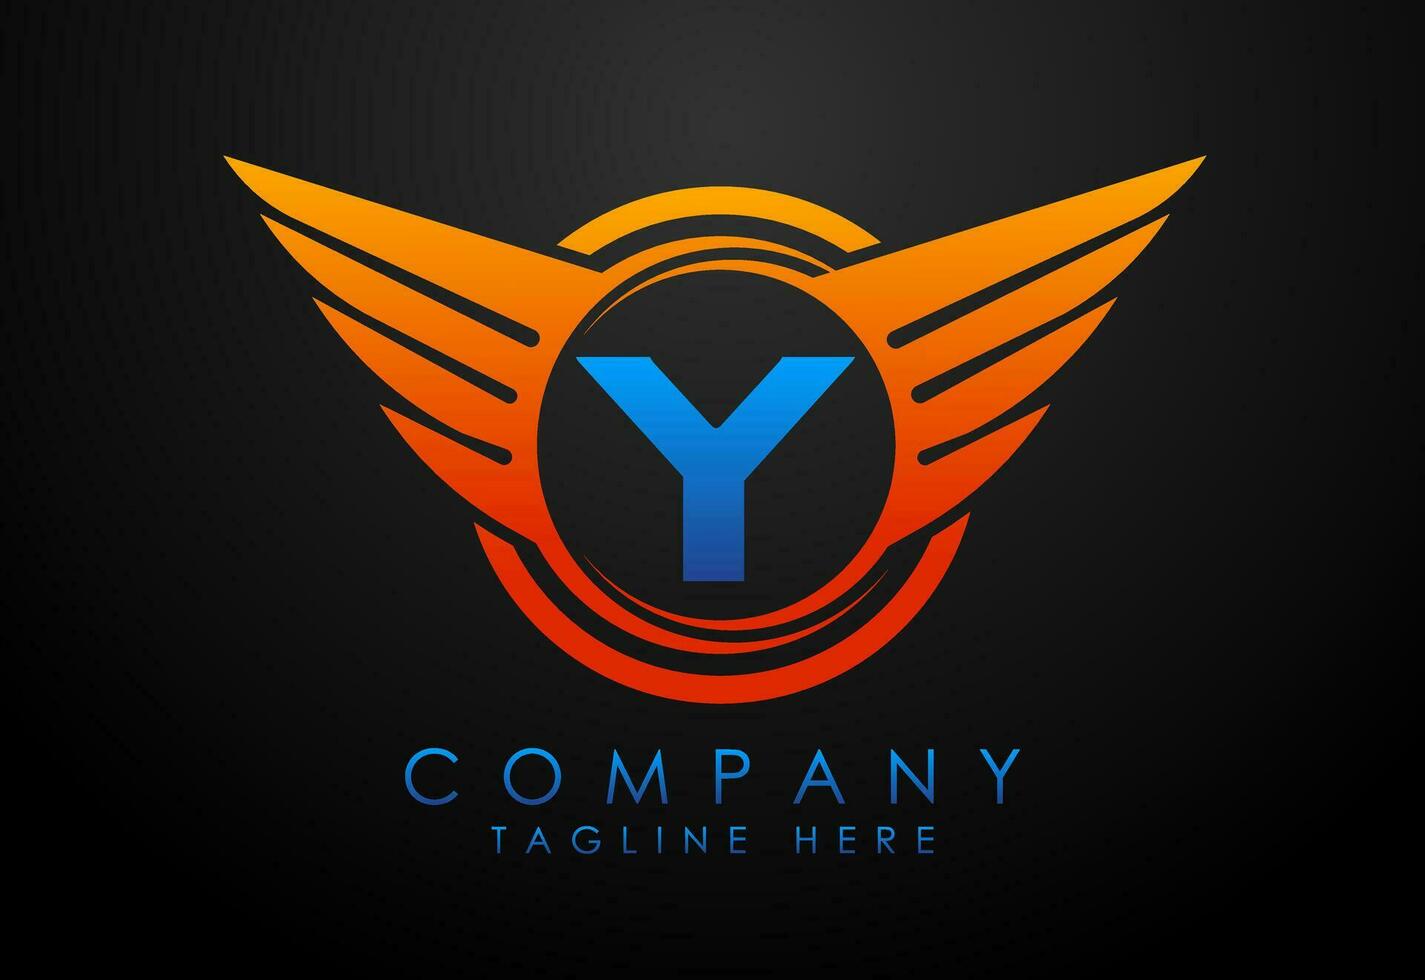 Englisch Alphabet y mit Flügel Logo Design. Auto und Automobil Vektor Logo Konzept